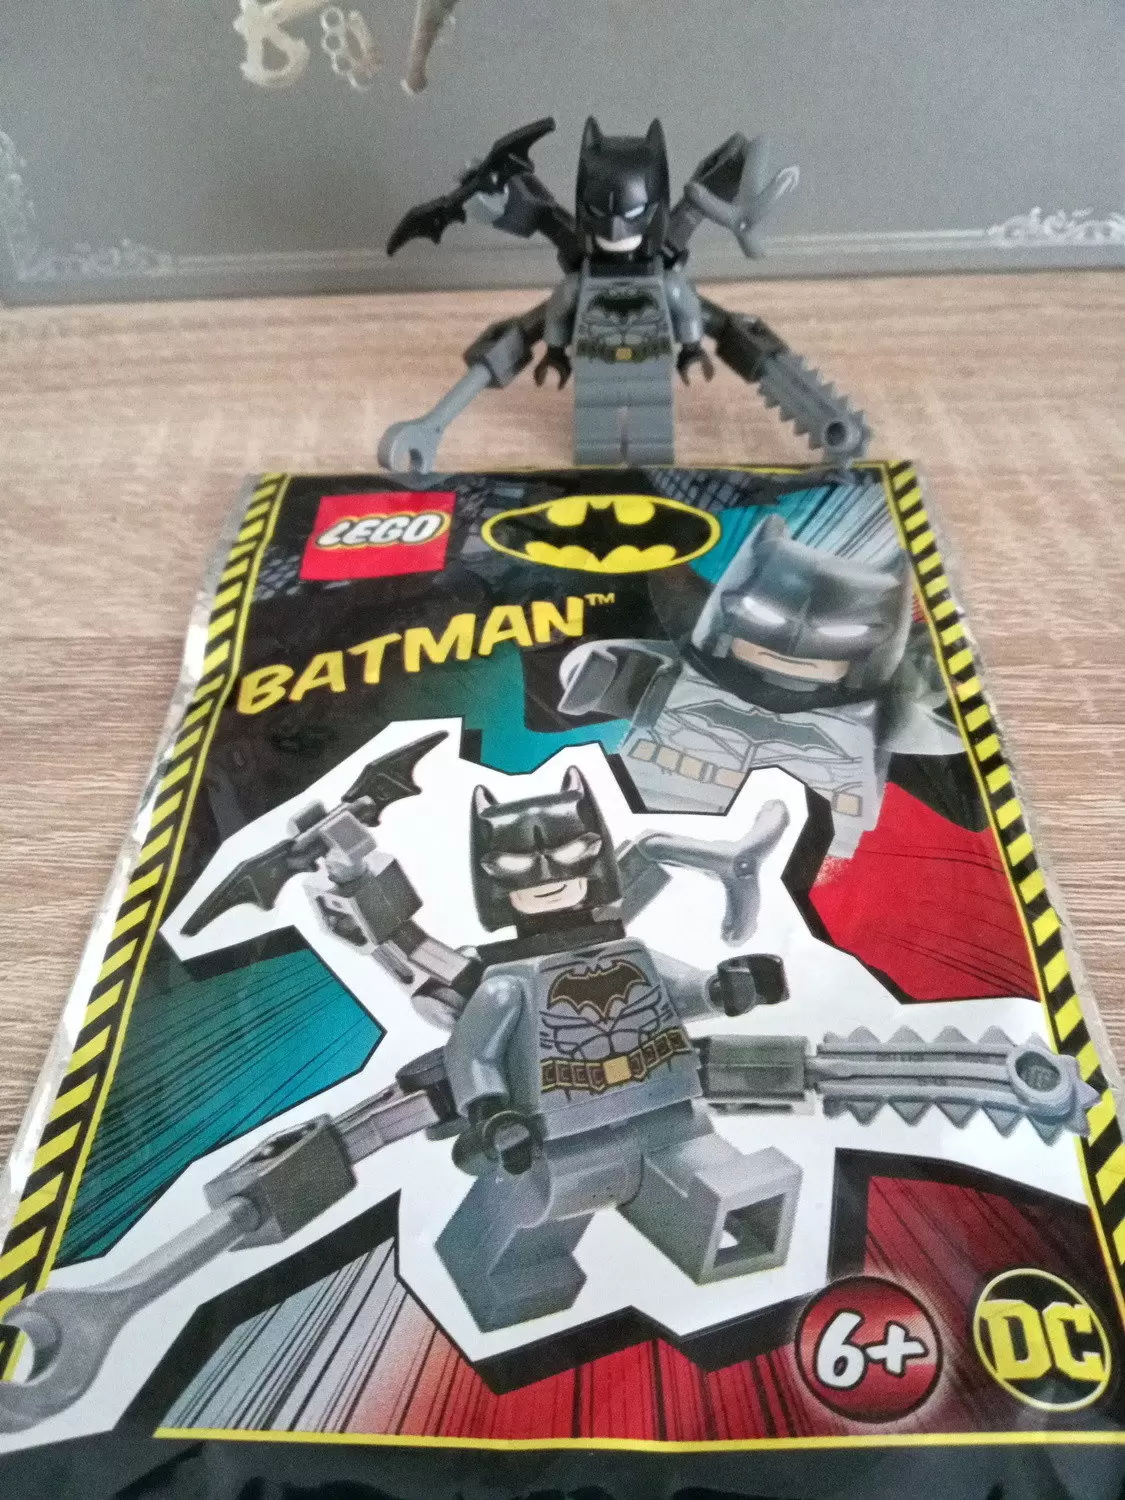 LEGO DC Comics Super Heroes - Batman